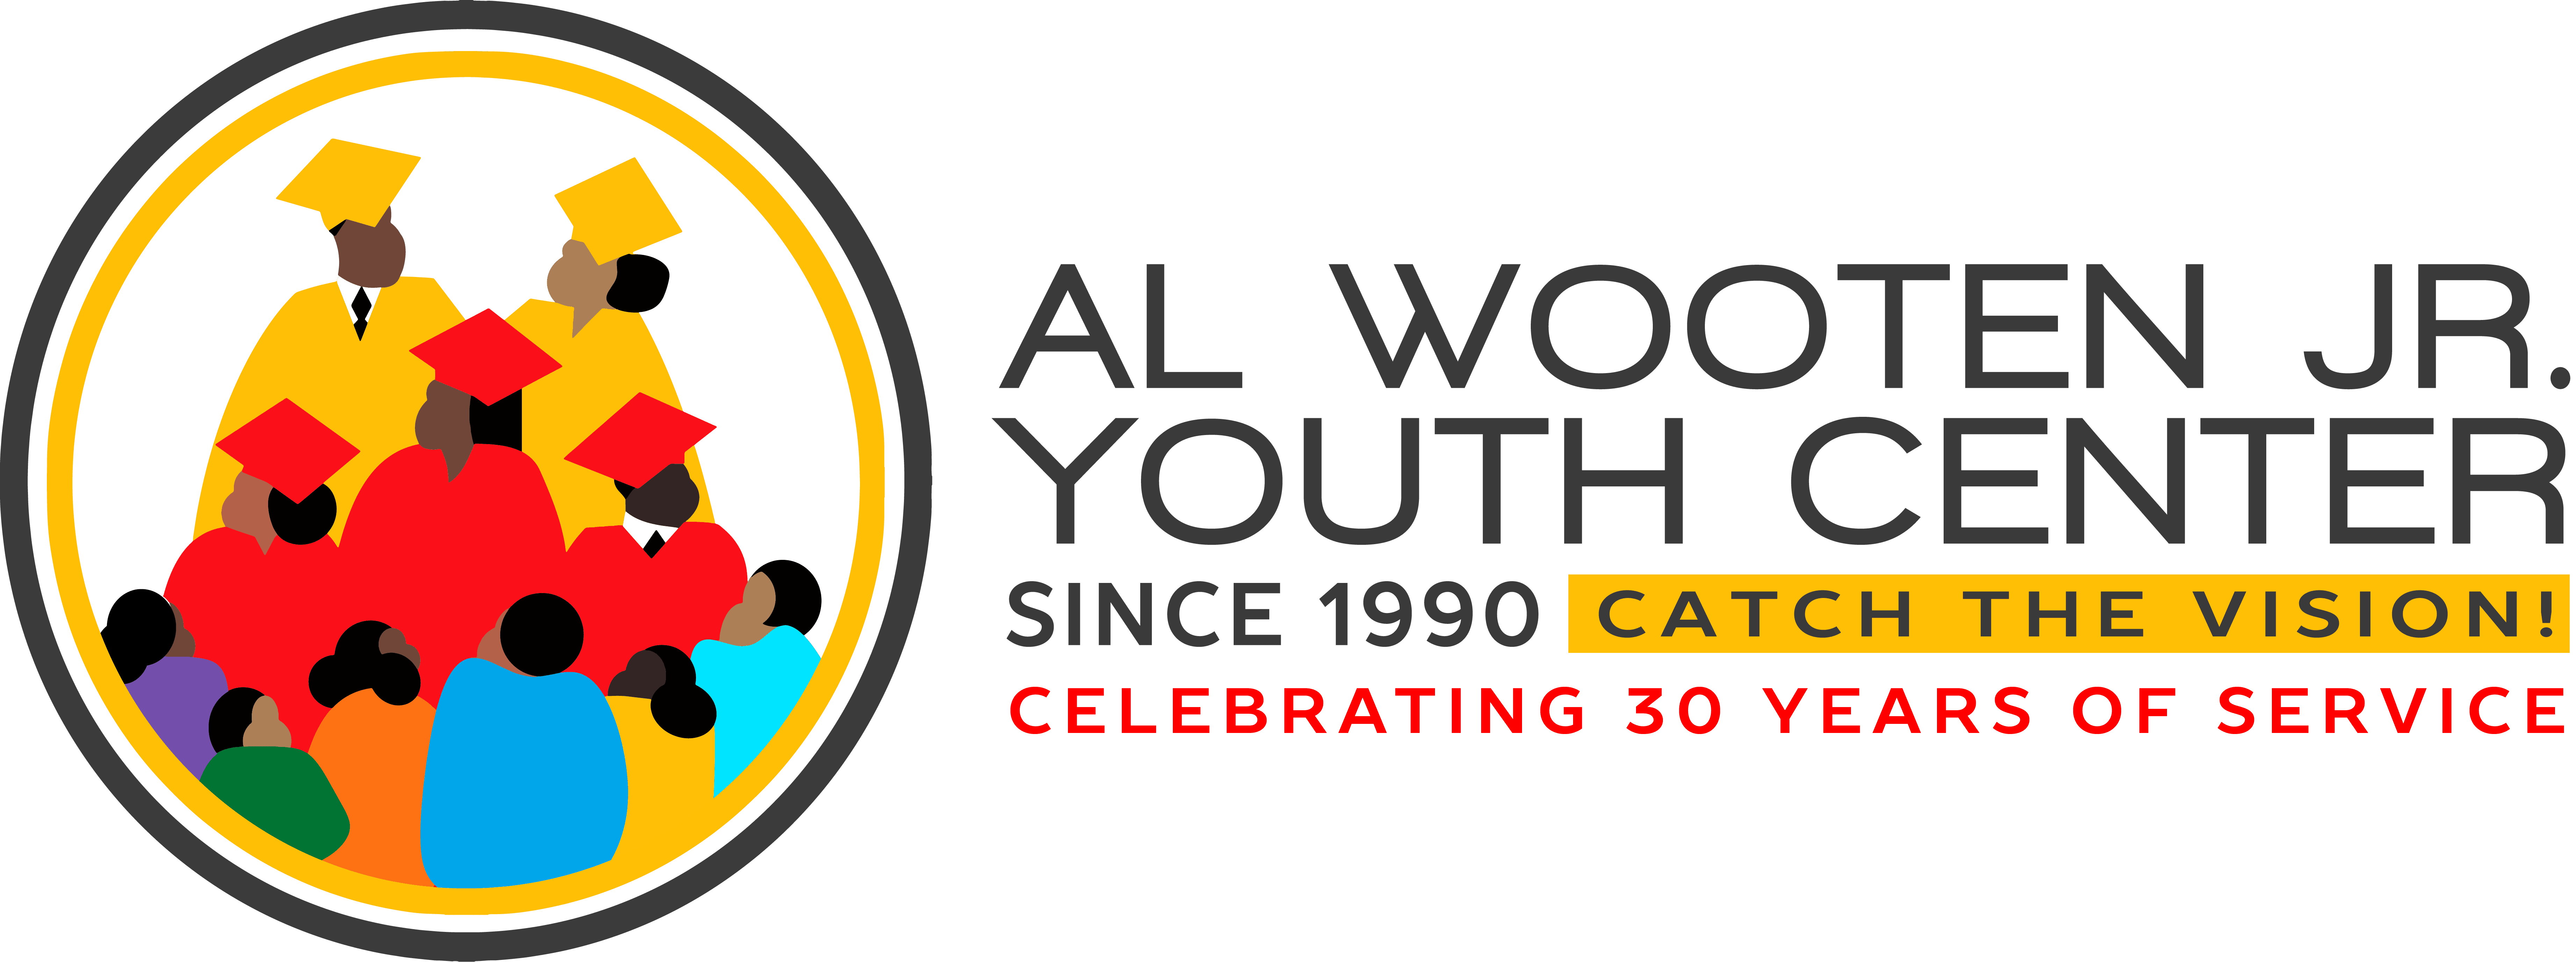 AL Wooten Jr Youth Center